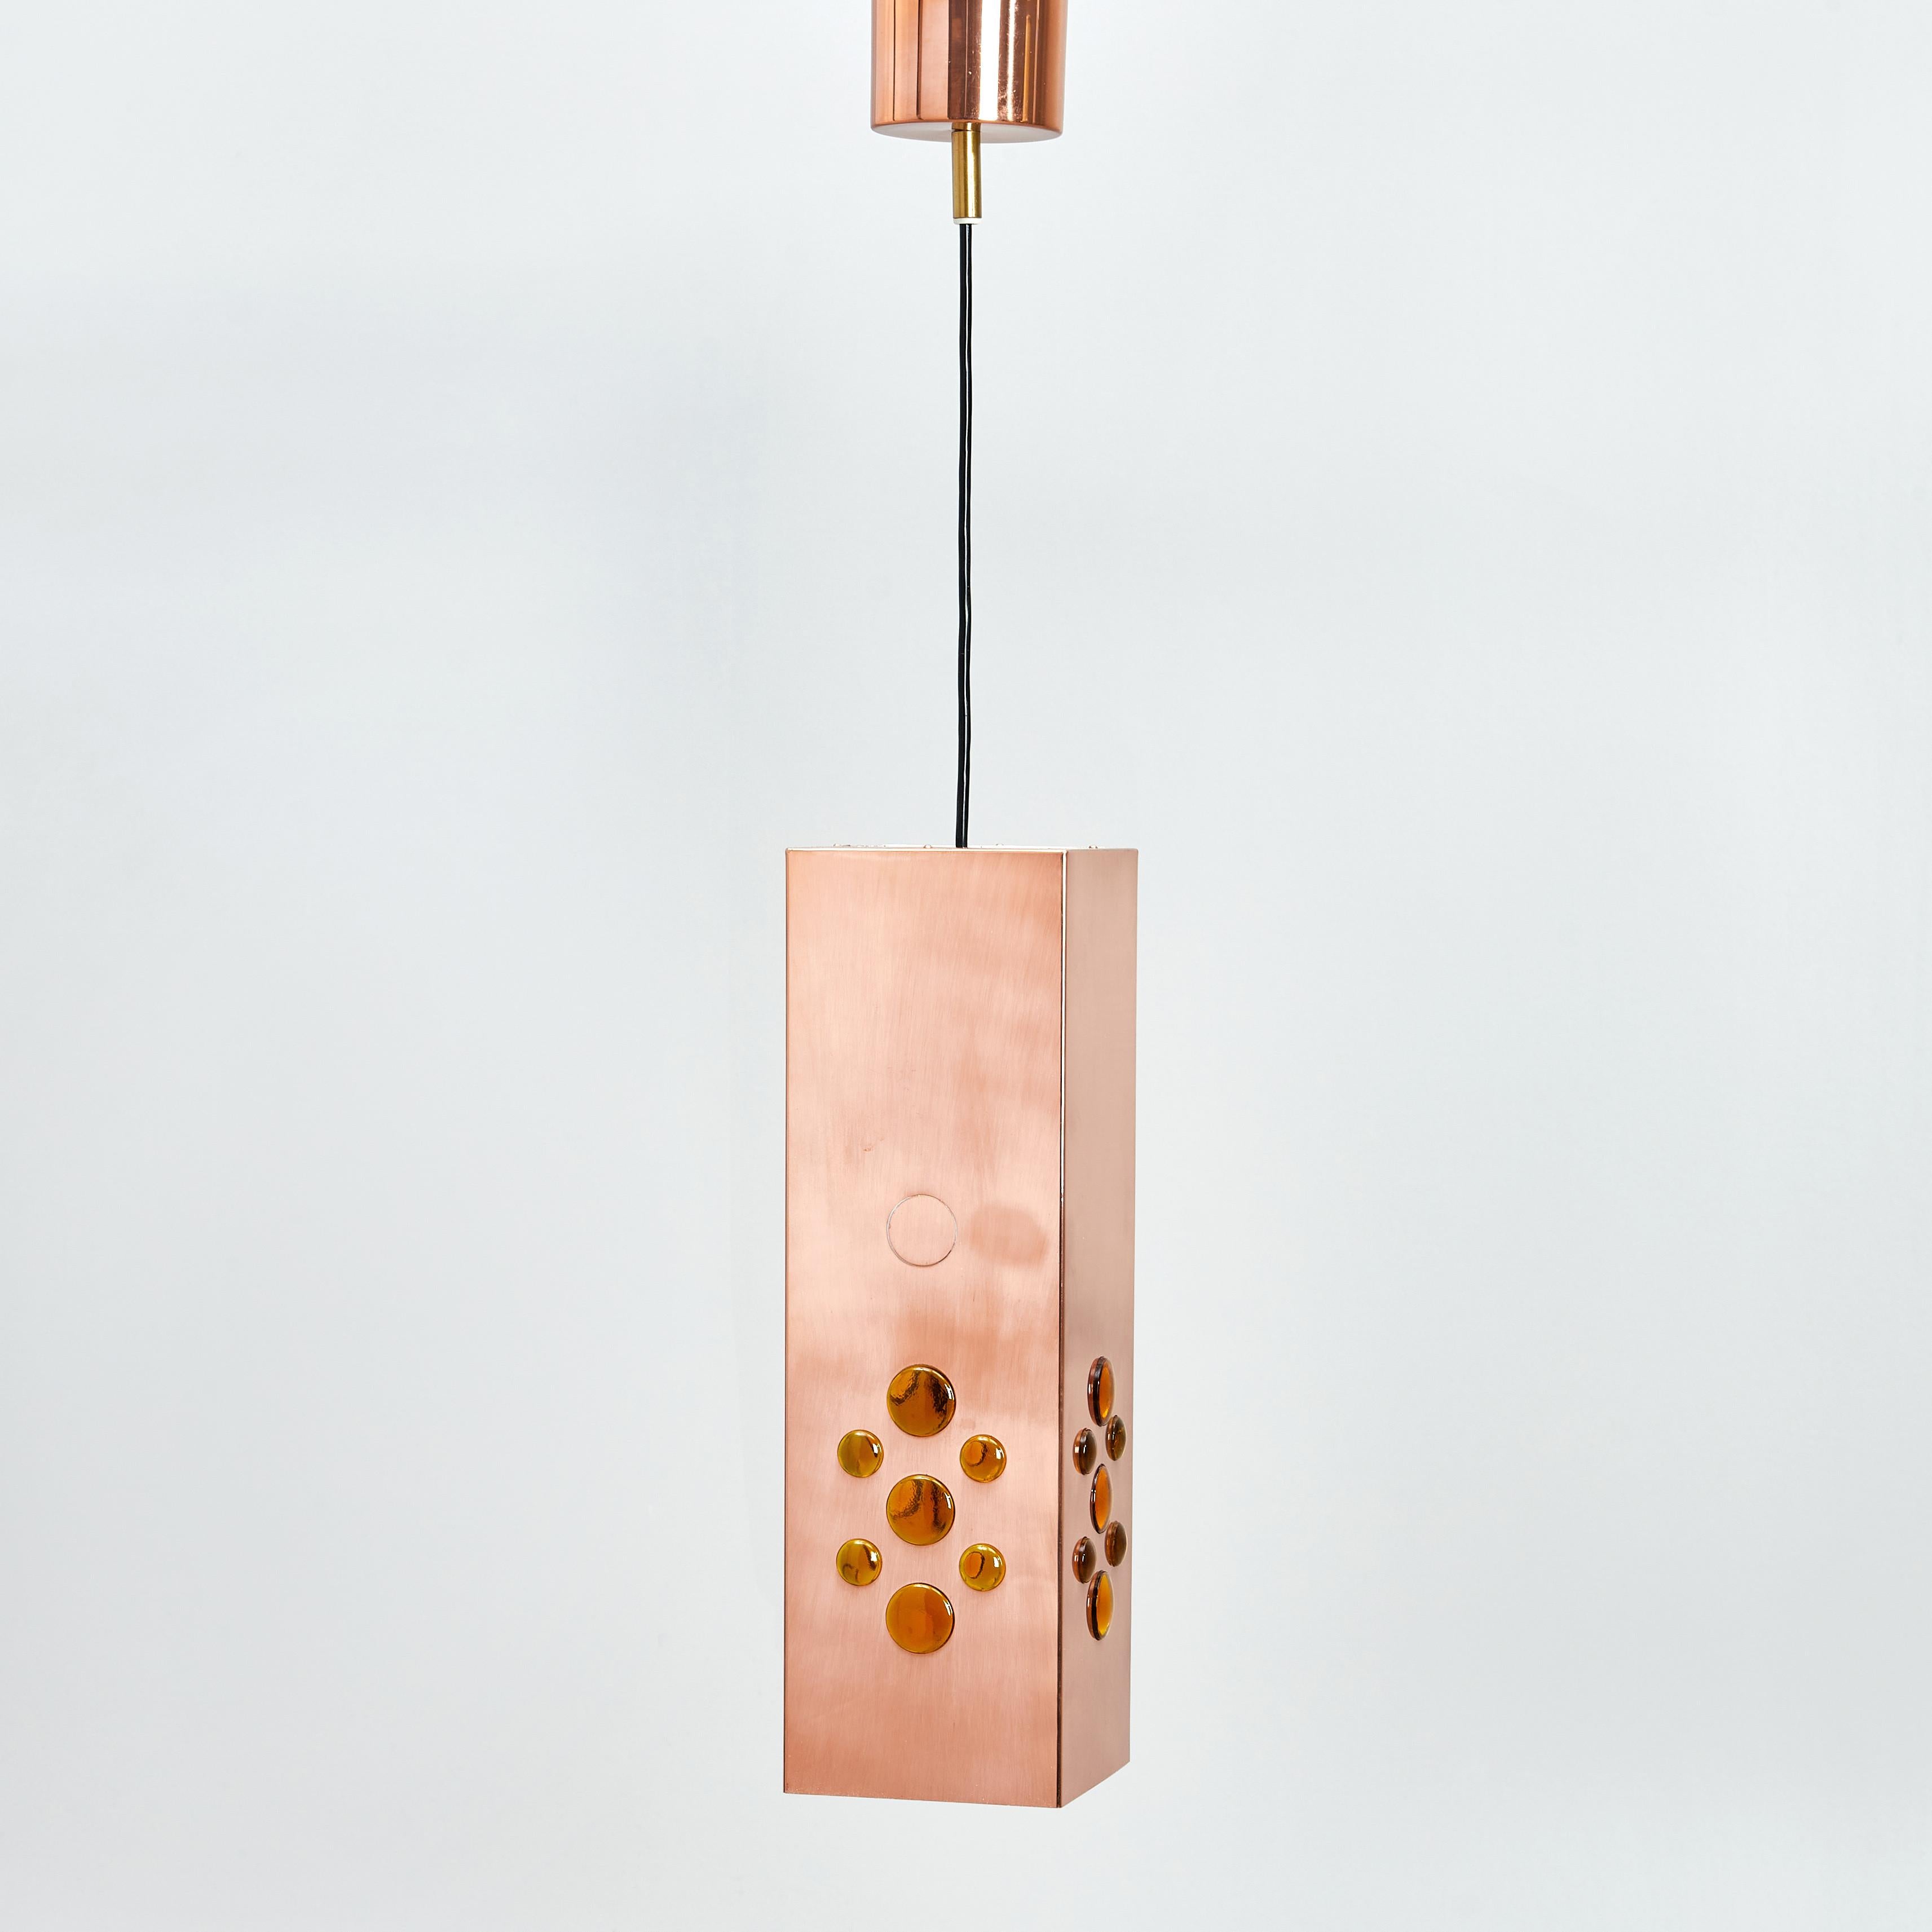 La lampe suspendue carrée en cuivre a été conçue par Hans-Agne Agnes pour Markaryd en Suède dans les années 1960. La lumière se propage de la partie perforée en cuivre en haut et de l'intérieur blanc avec des perles de verre orange vers tous les